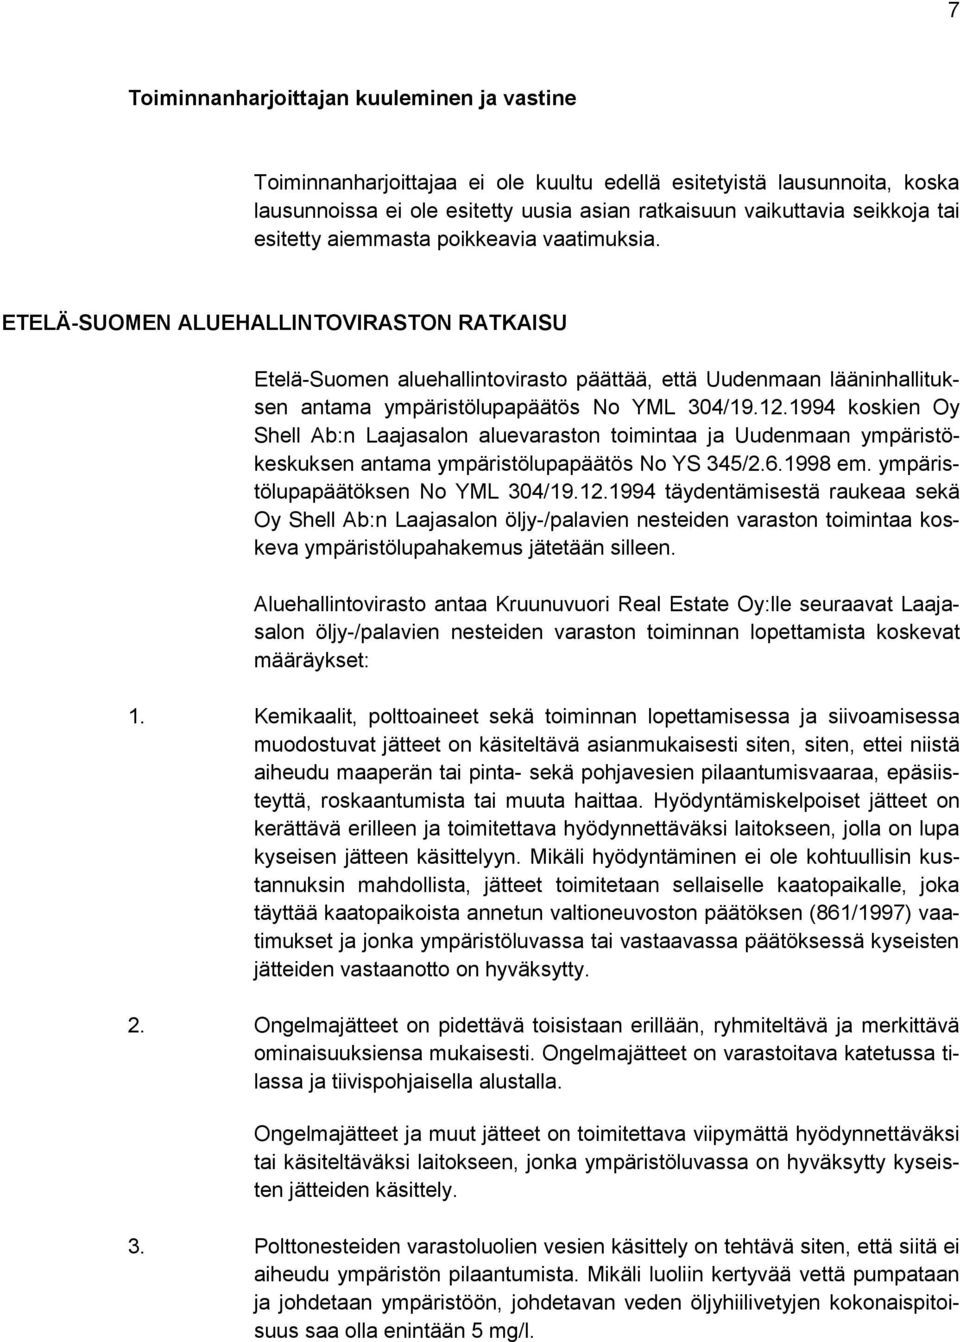 ETELÄ-SUOMEN ALUEHALLINTOVIRASTON RATKAISU Etelä-Suomen aluehallintovirasto päättää, että Uudenmaan lääninhallituksen antama ympäristölupapäätös No YML 304/19.12.